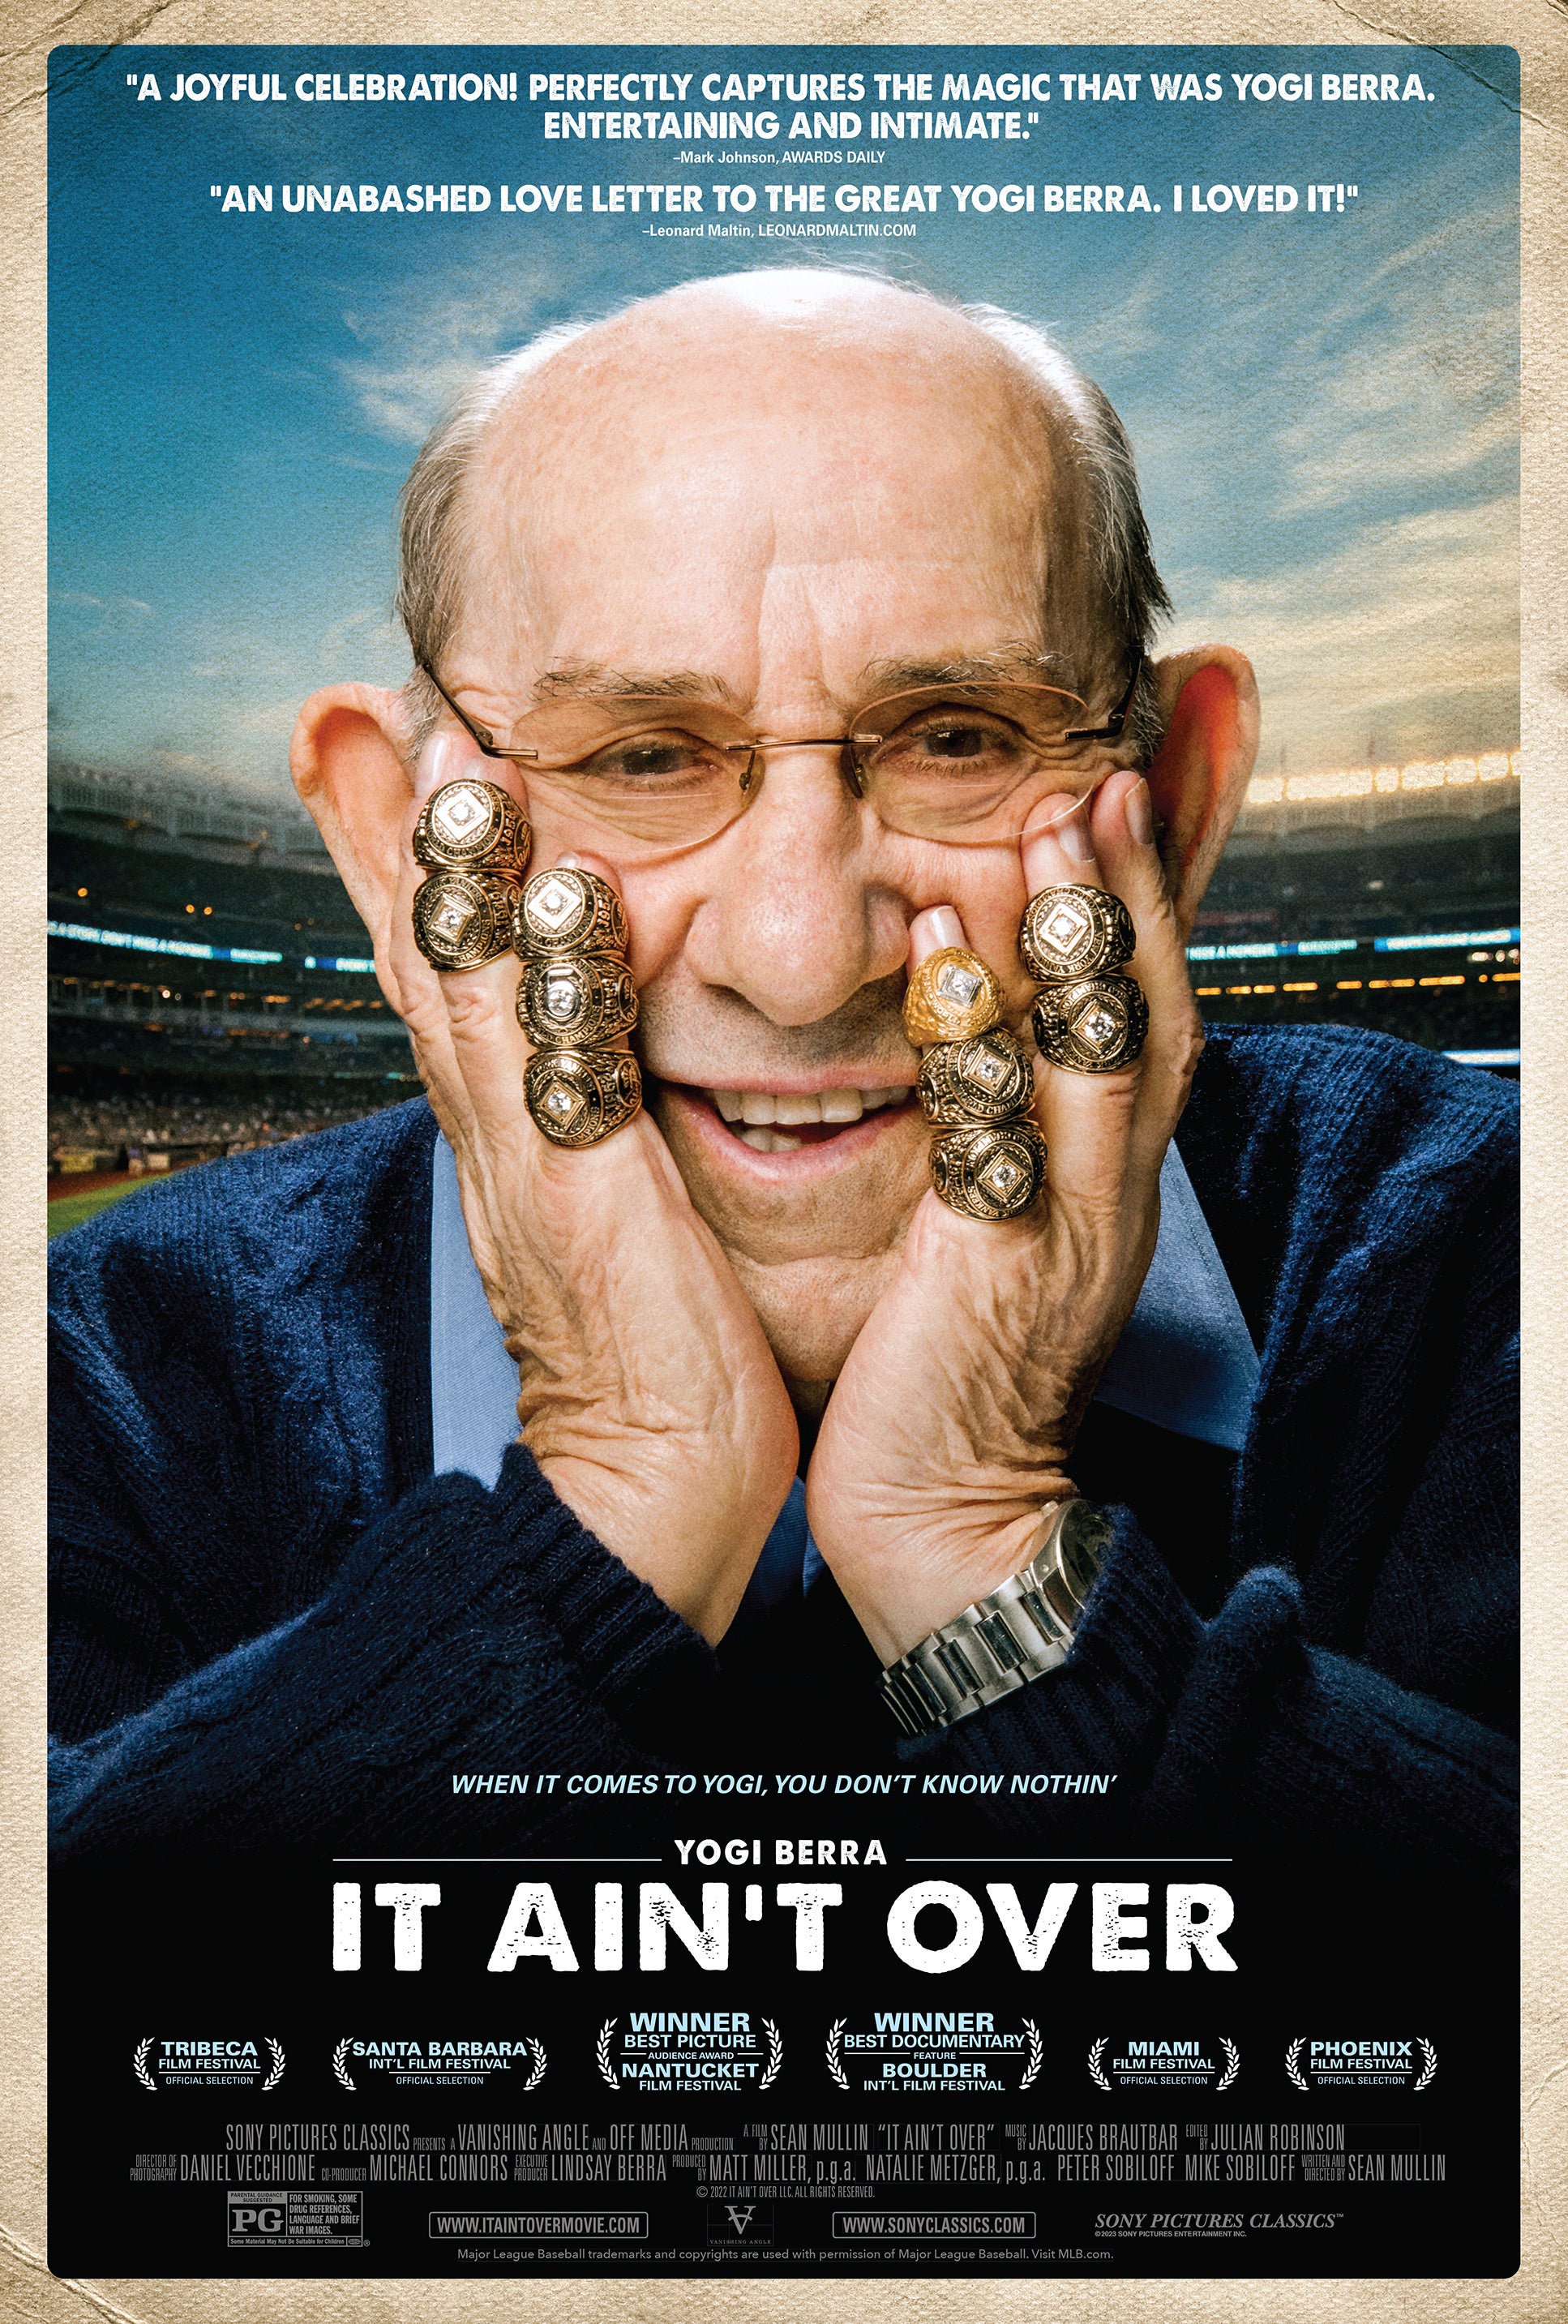 Yogi Berra Quote: “I love baseball, I really do. I always told my